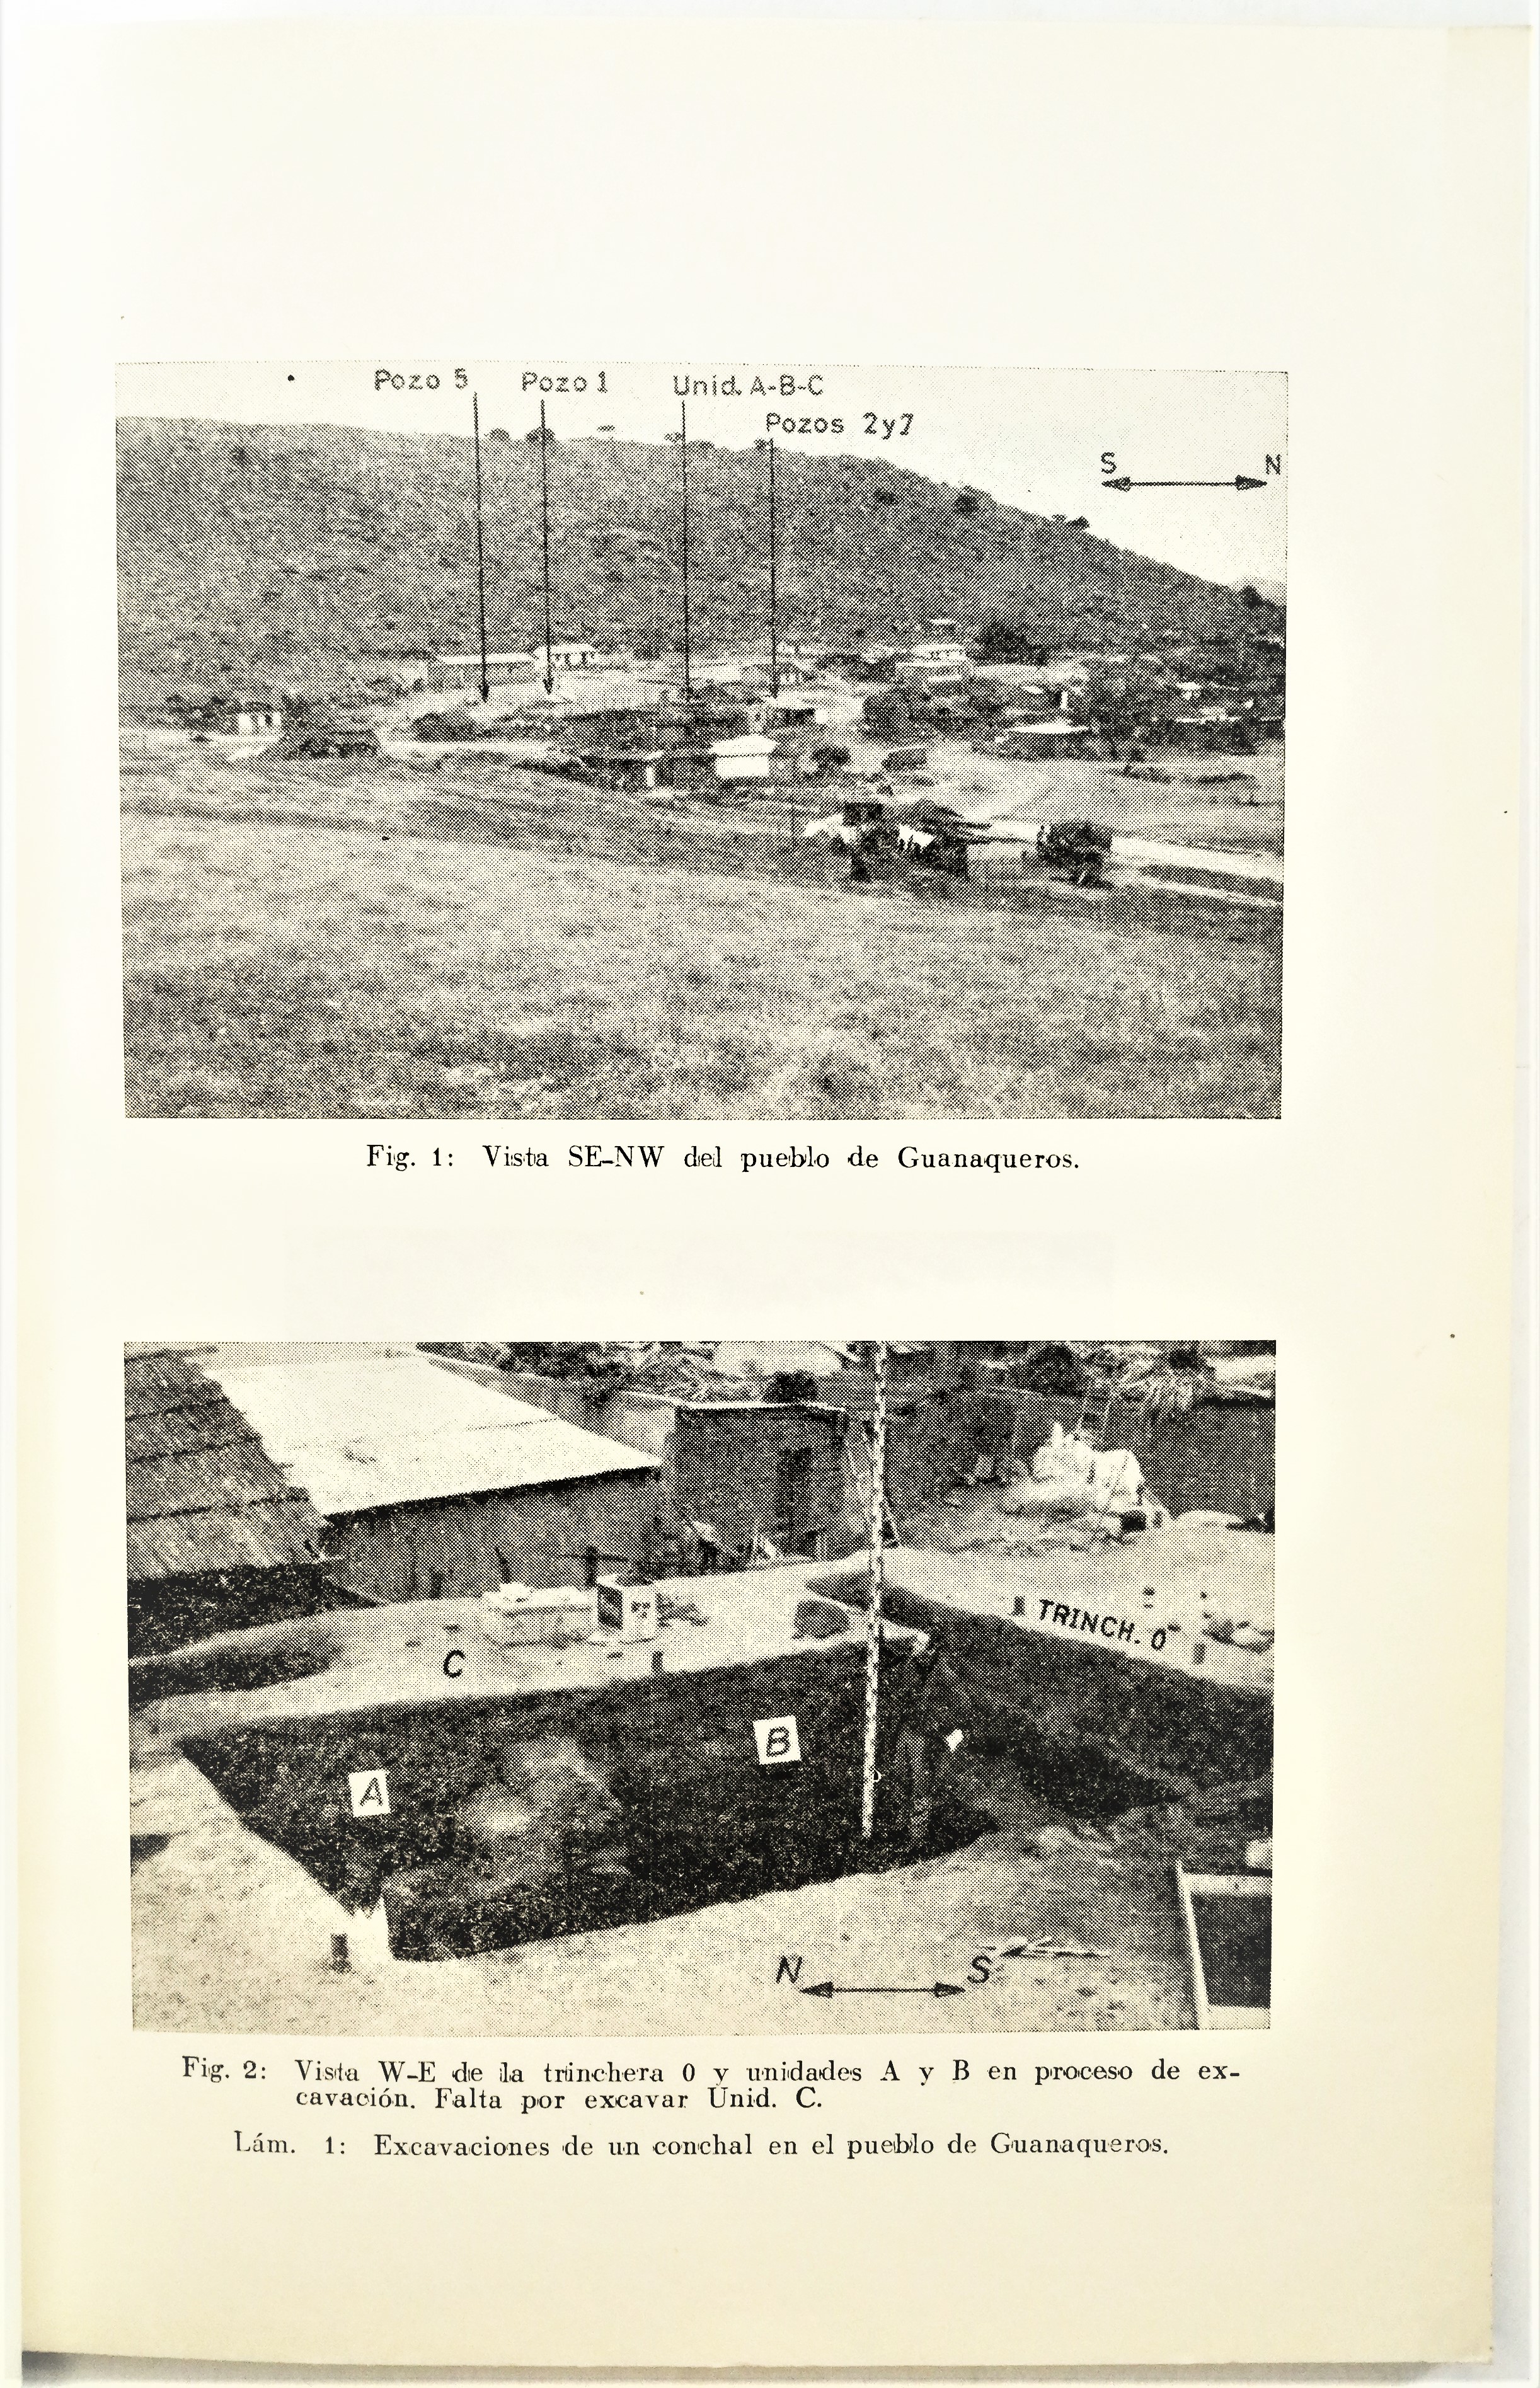 Virgilio Schiappacasse F. & Hans Niemeyer F. - Excavaciones de un conchal en el pueblo de Guanaqueros